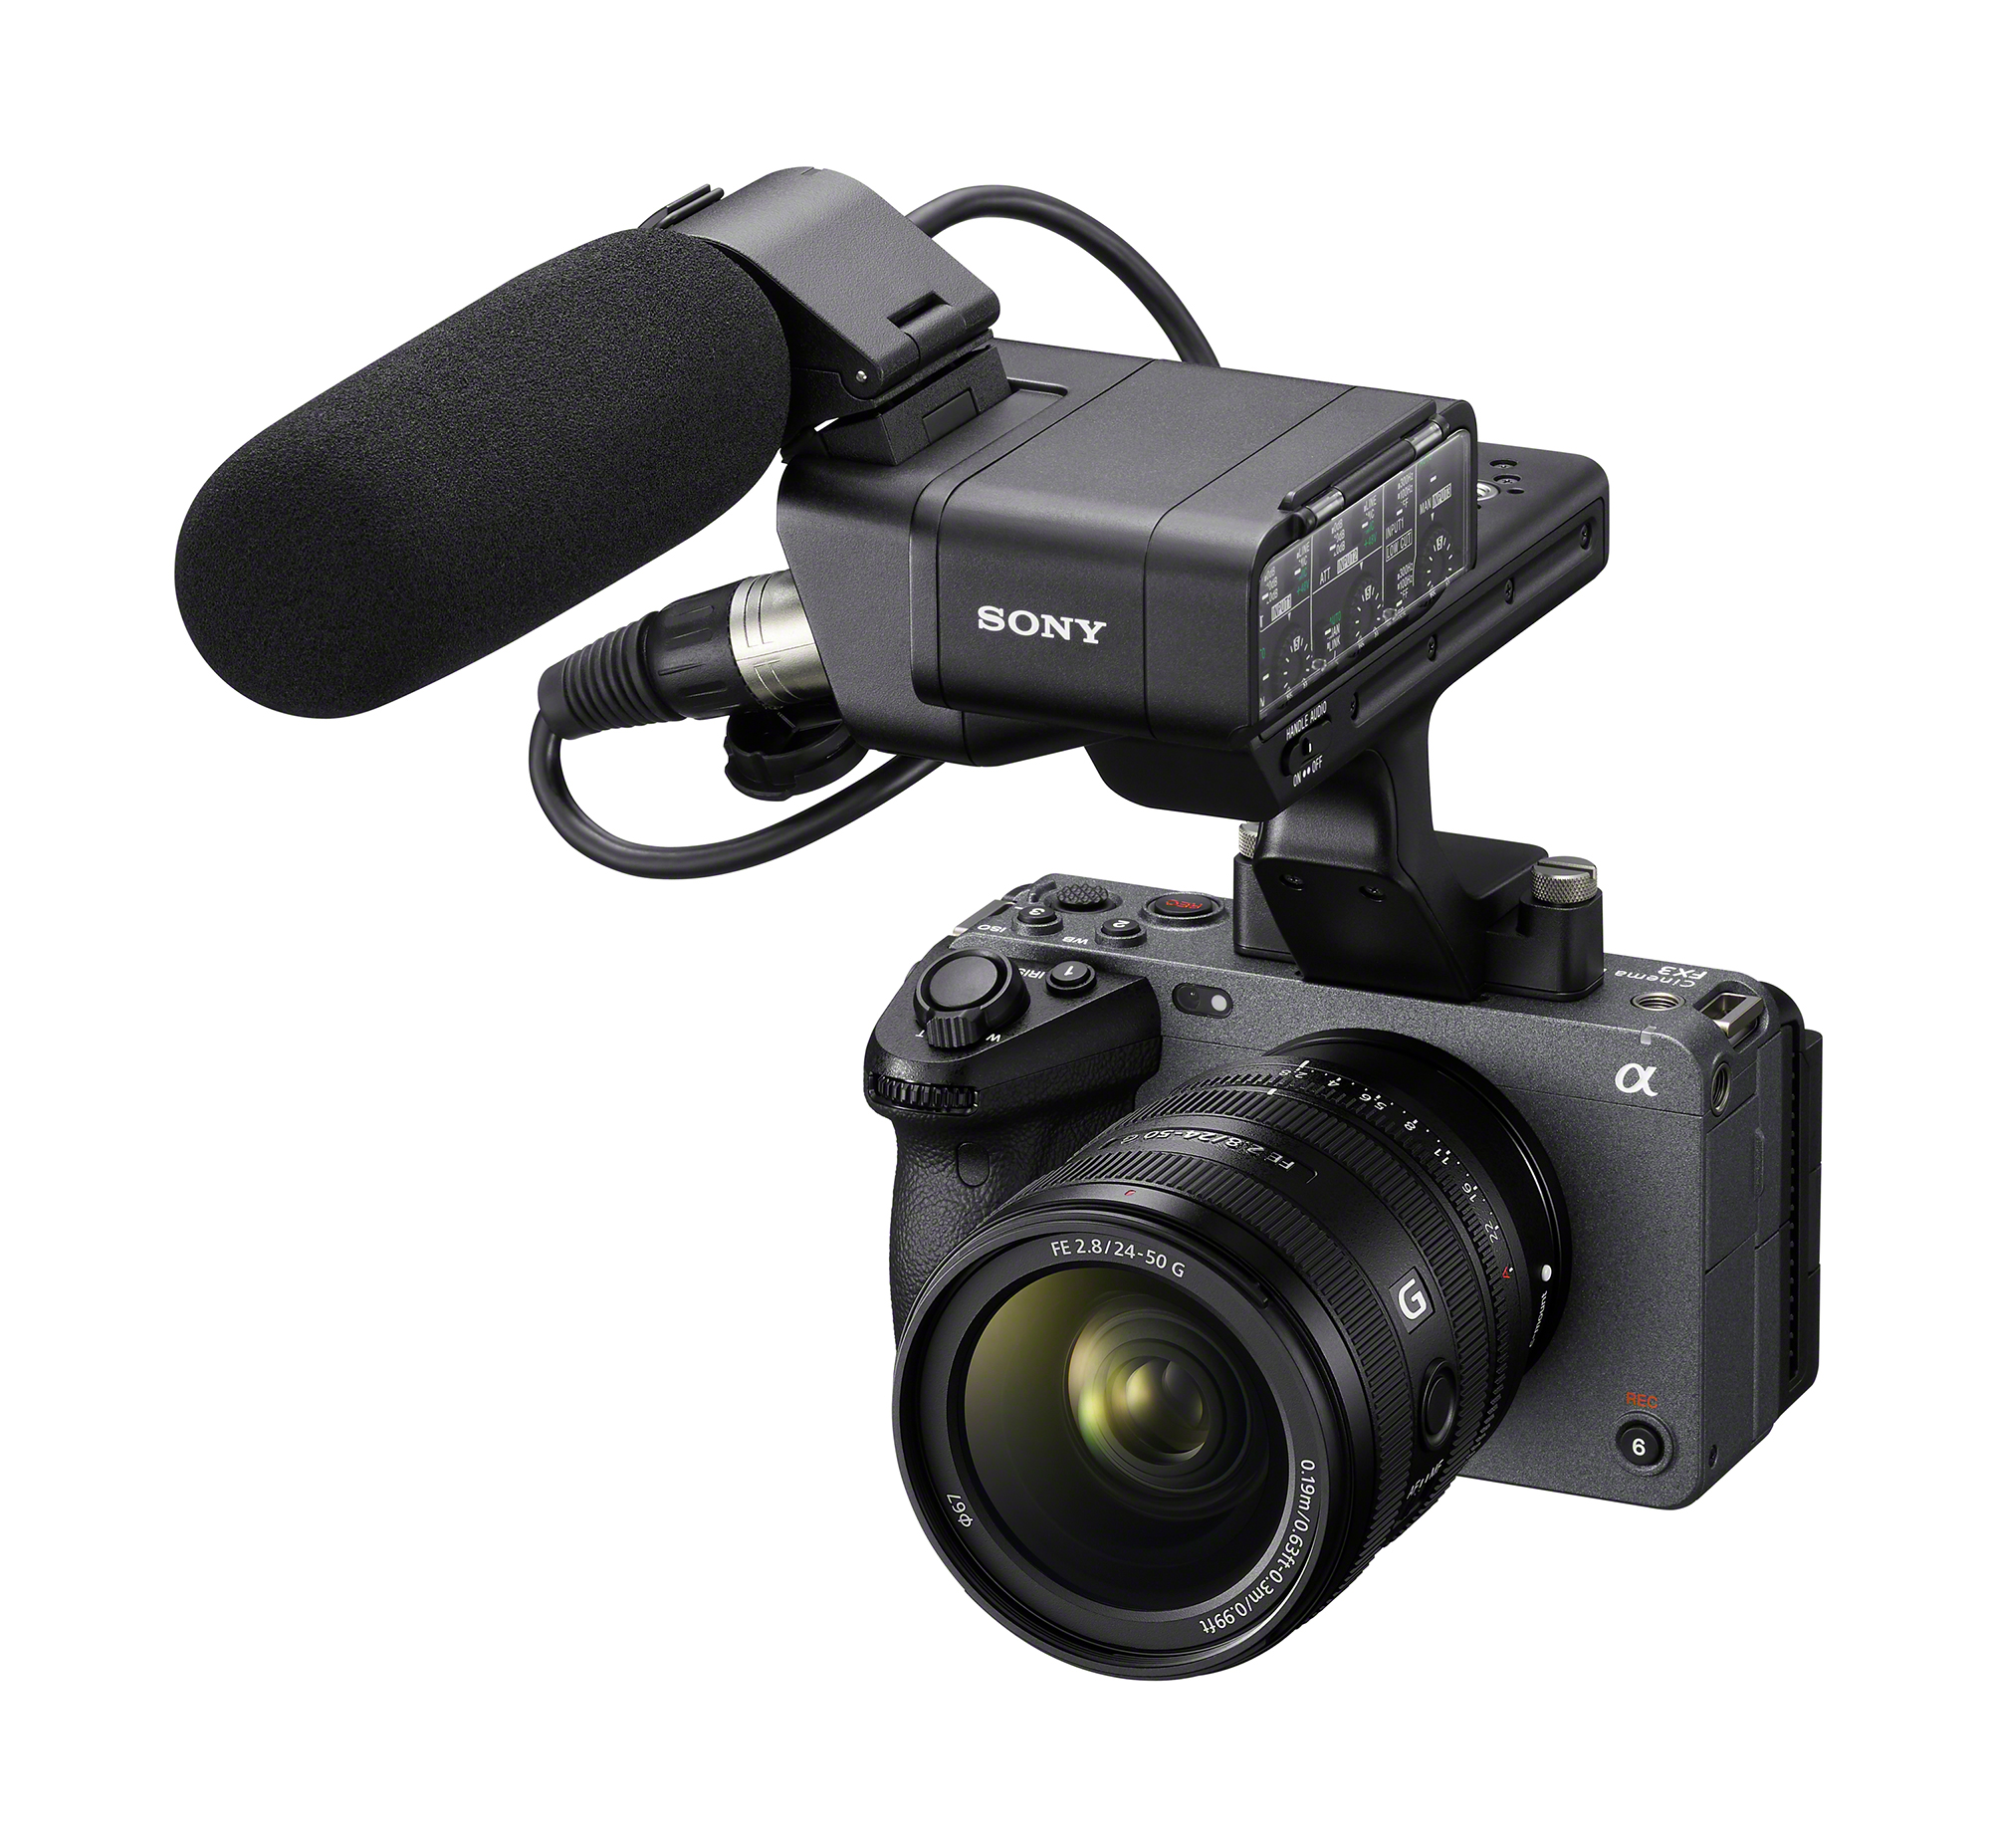 鏡頭安裝在相機 ILME-FX3 上